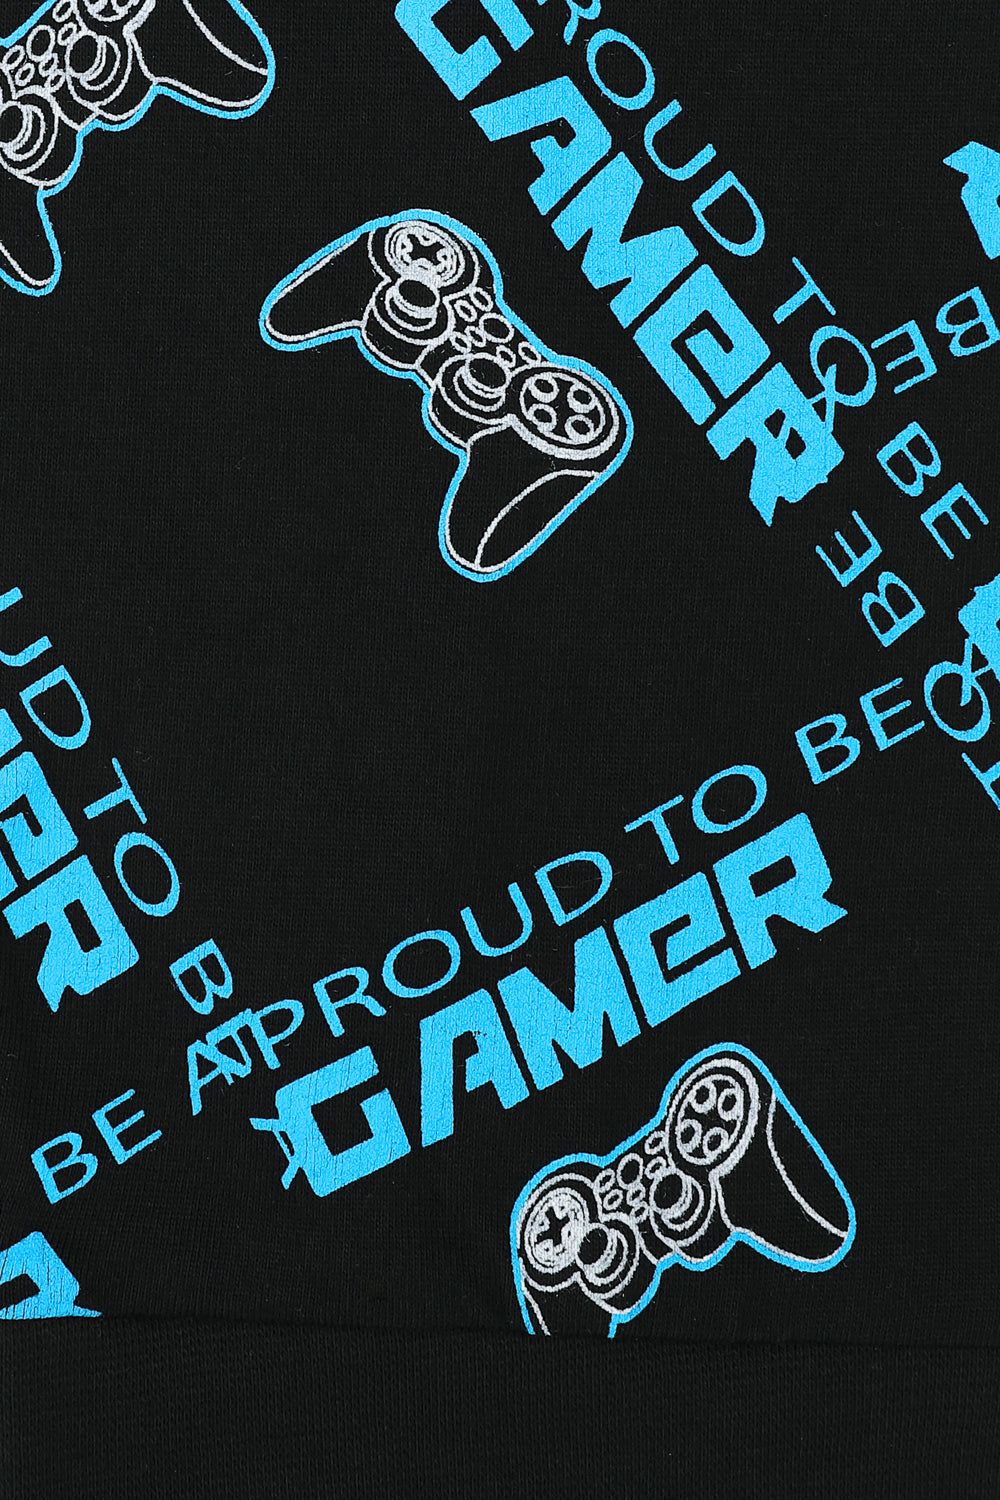 Boys Proud To Be A Gamer Controller Long Pyjamas - Pyjamas.com